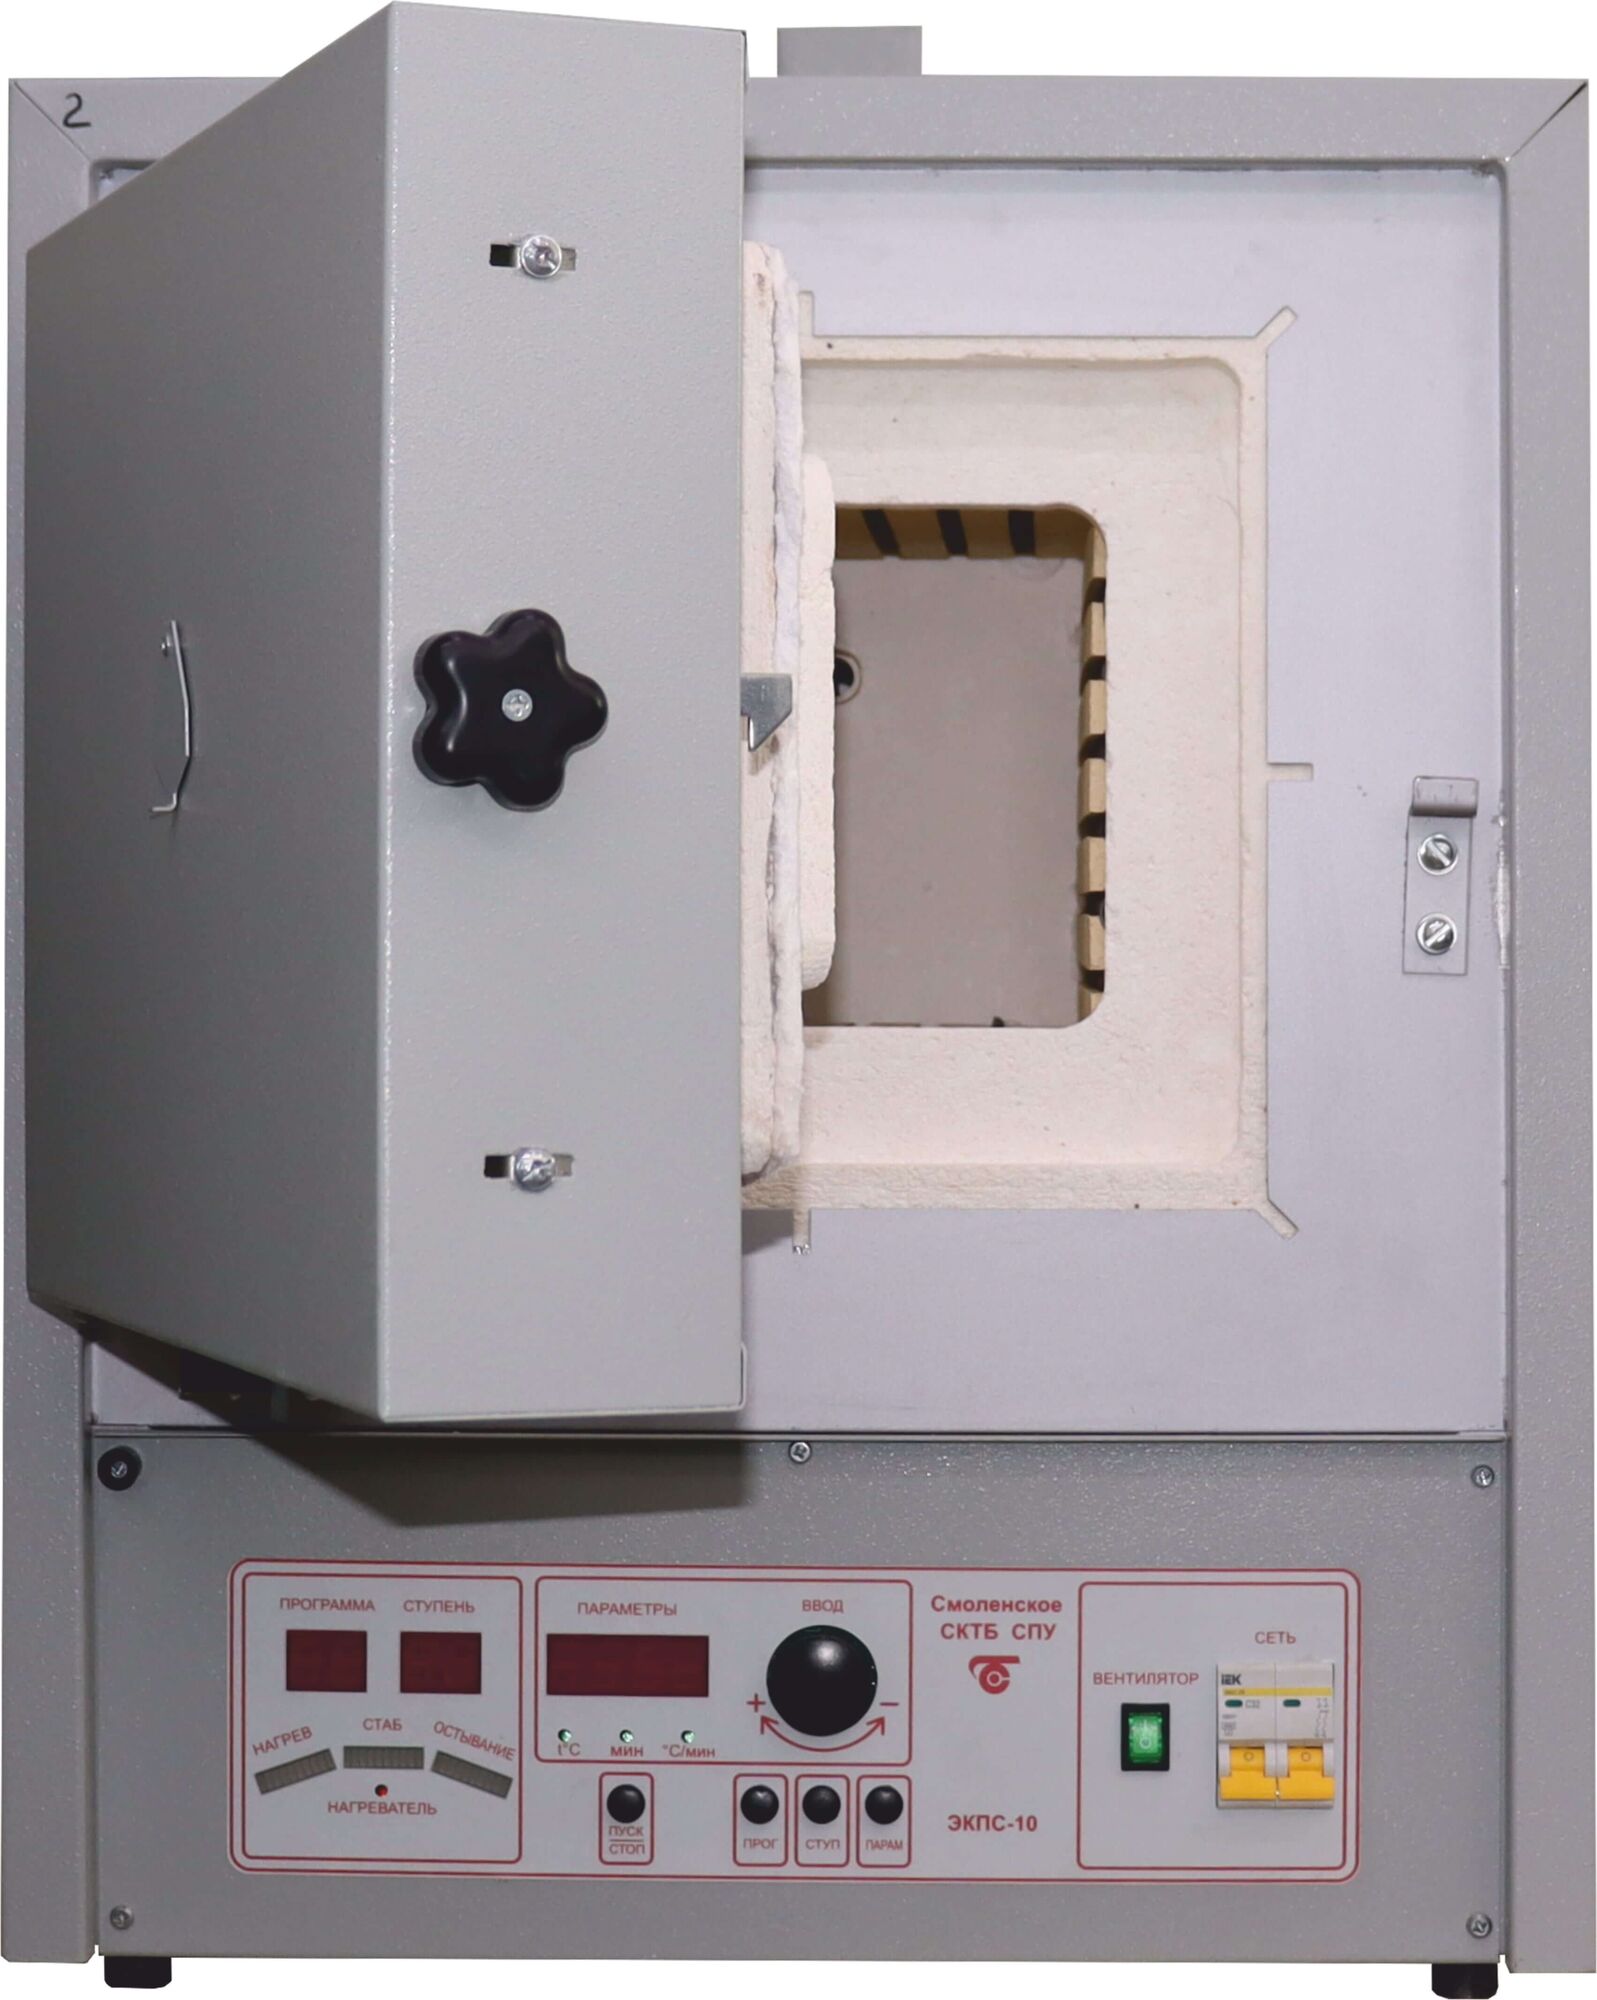 Муфельная печь ЭКПС-10 СПУ мод. 4009Т (50-1100 °С, керамичсекий муфель, открытые нагреватели, многофункциональный блок М